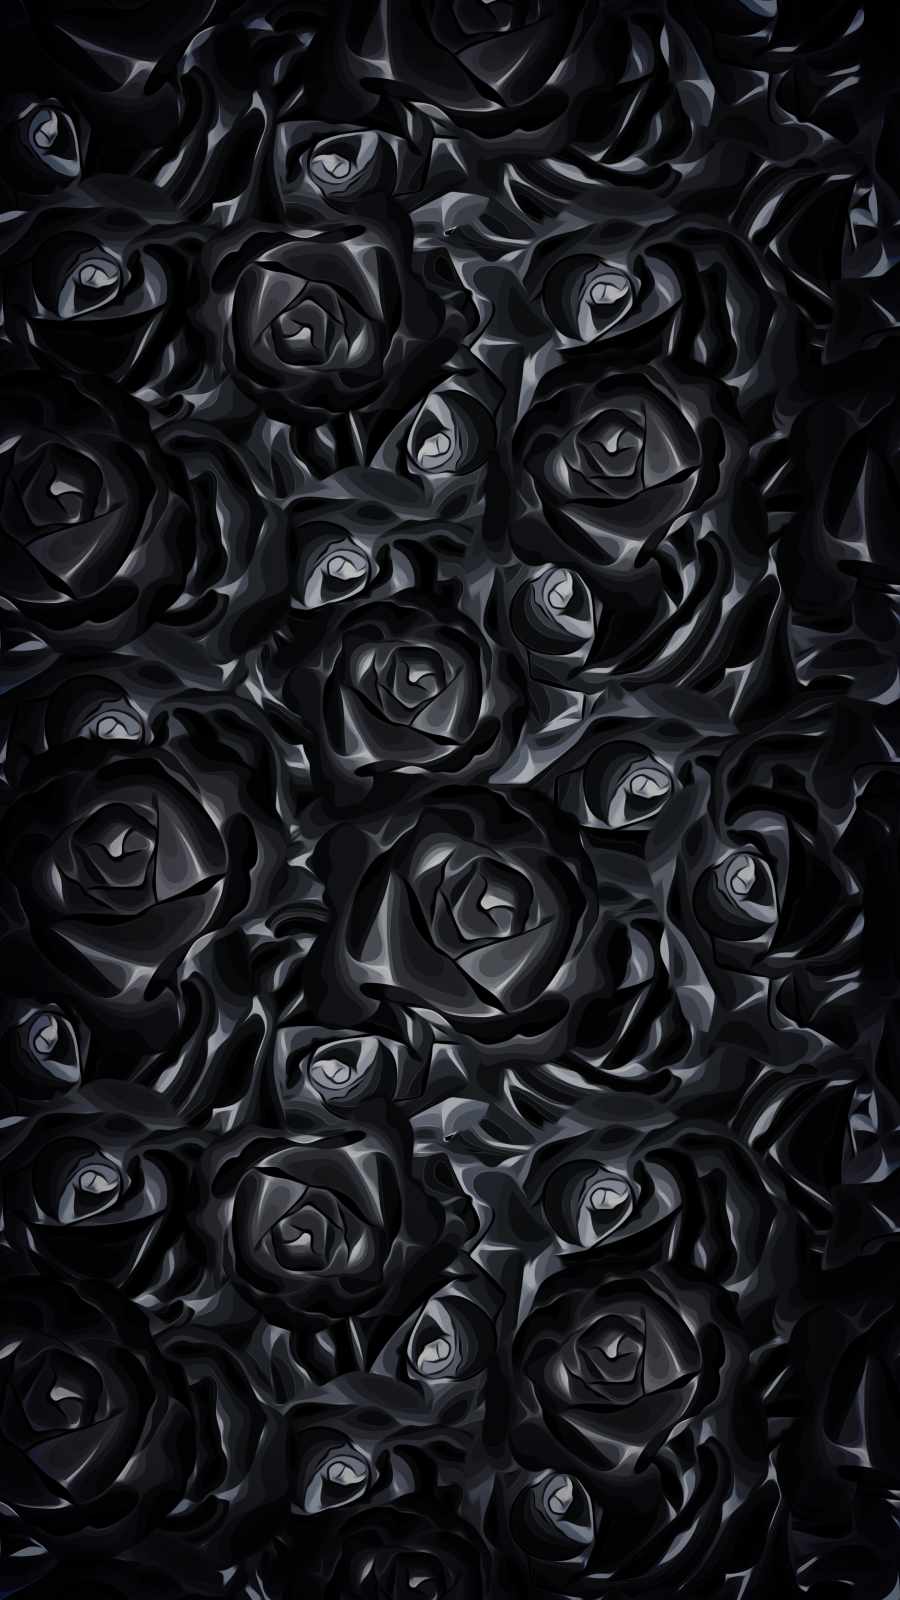 Black Roses iPhone Wallpaper